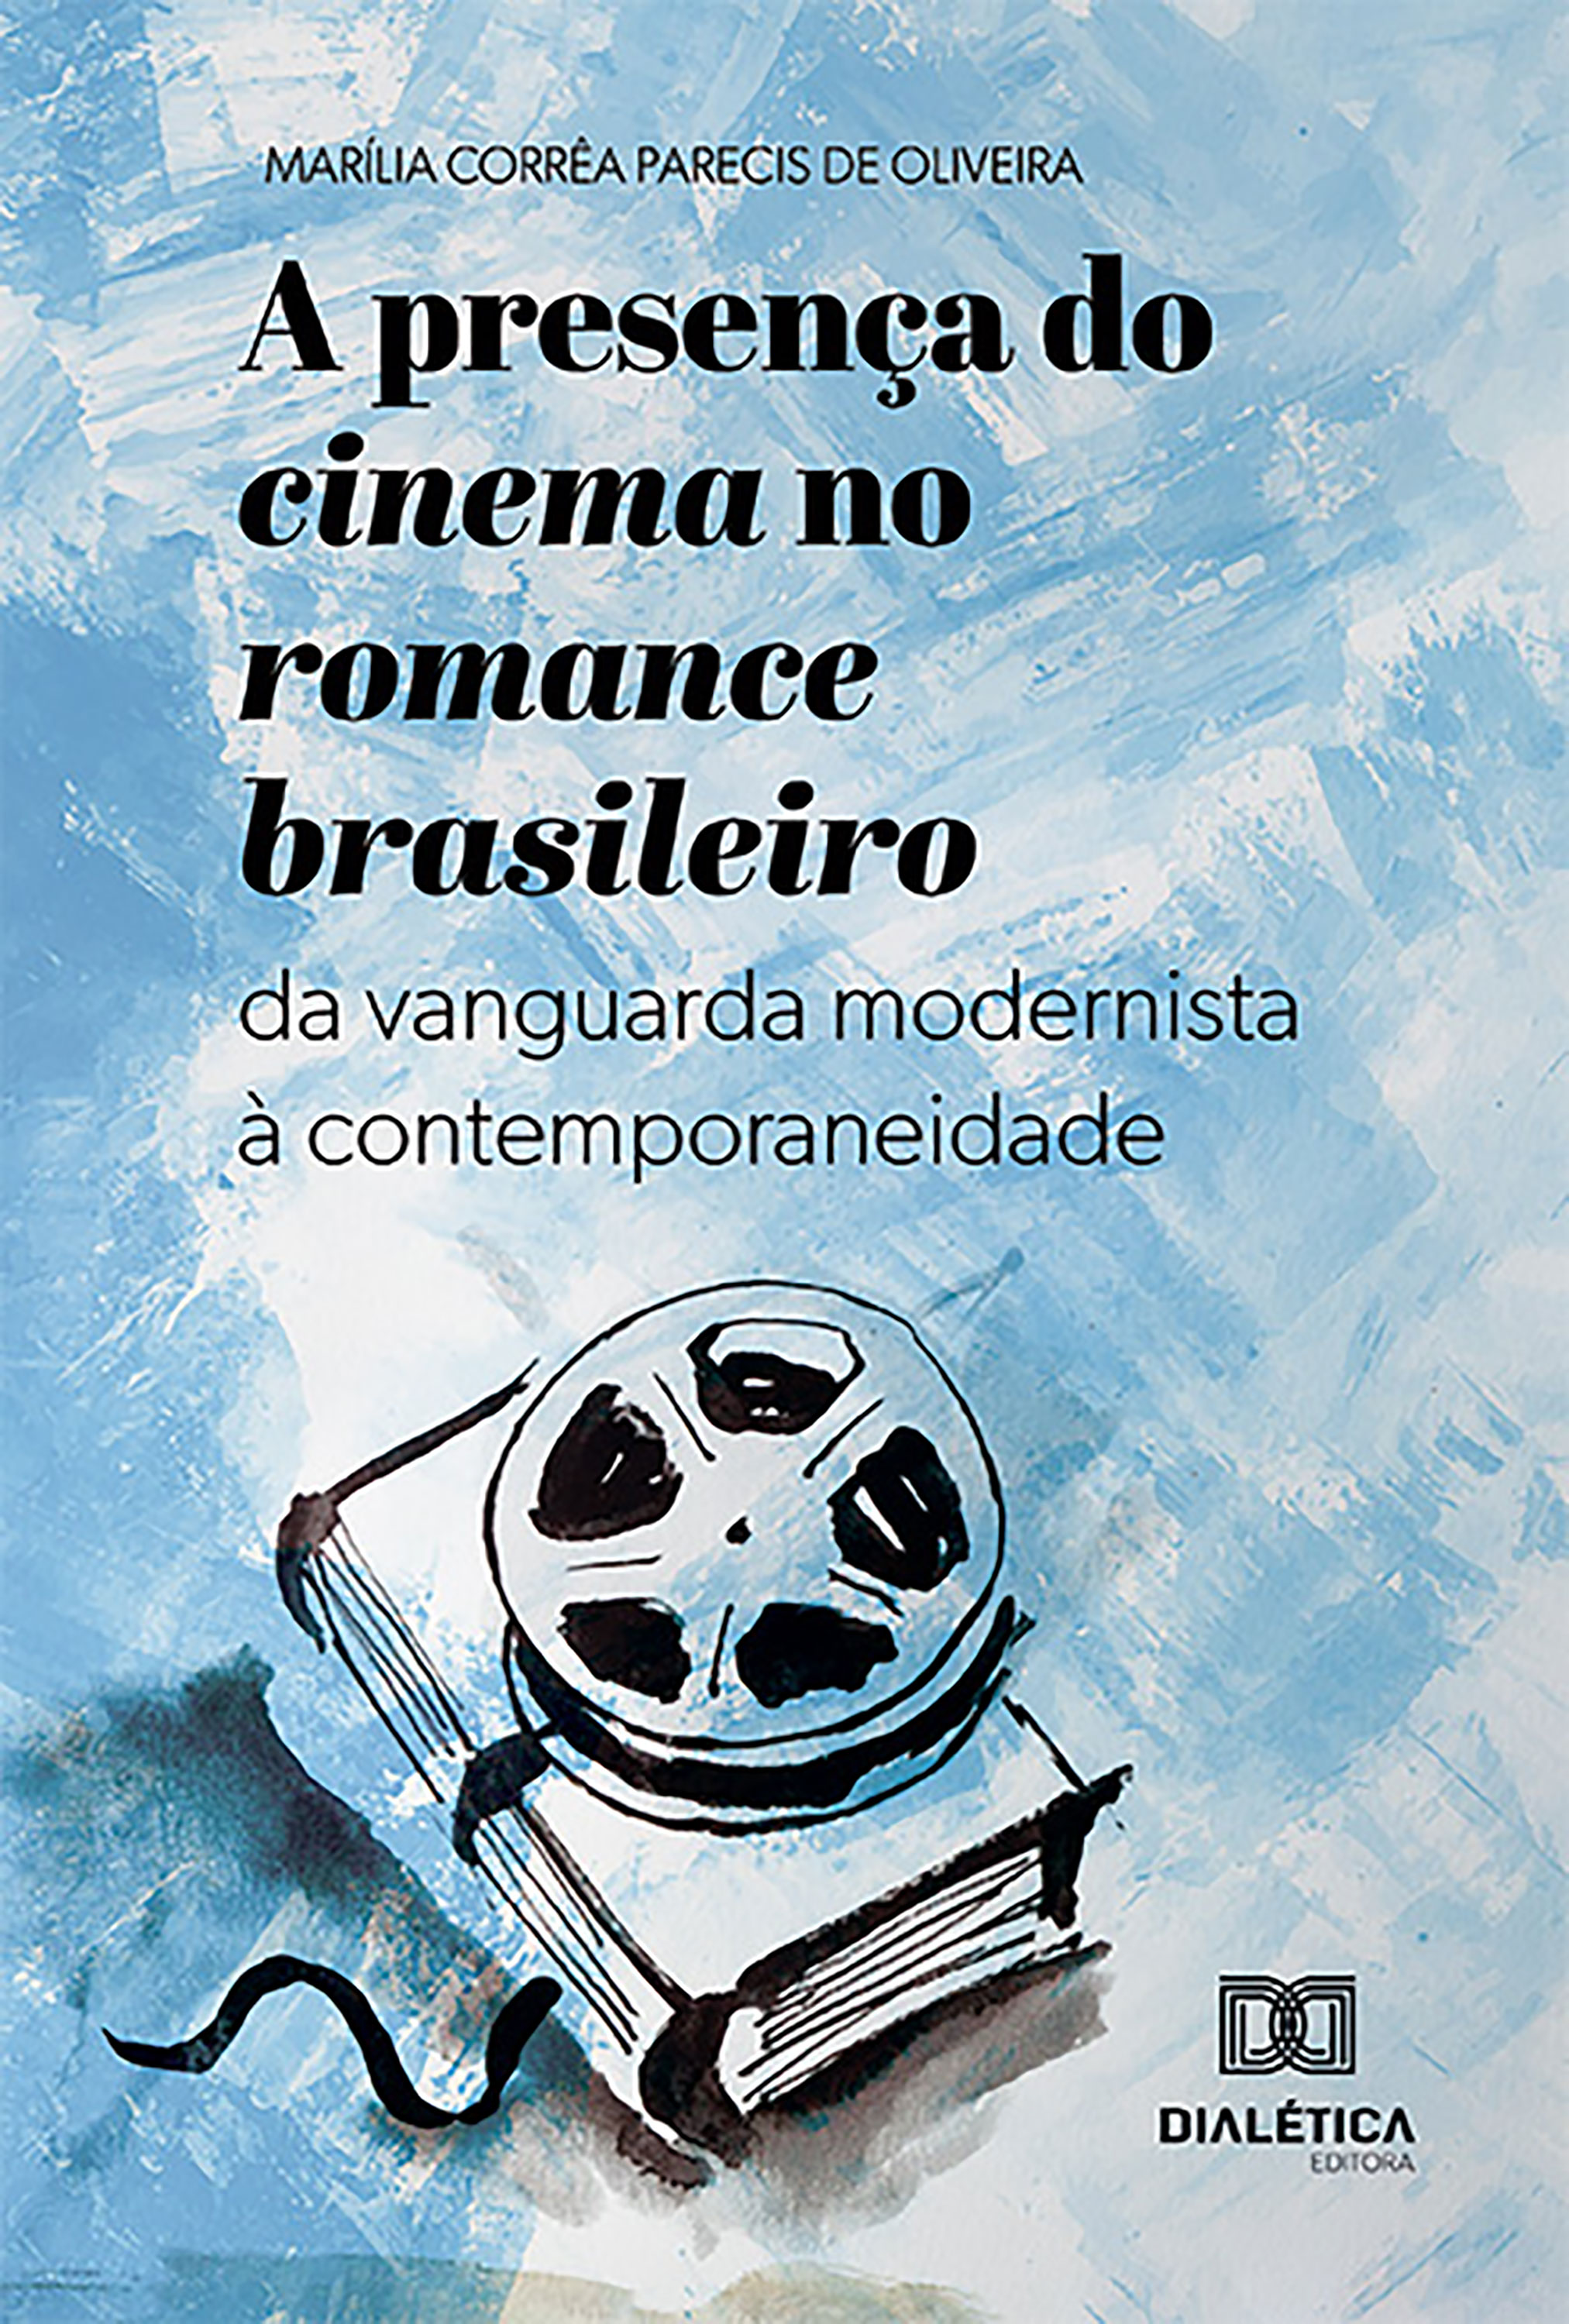 A presença do cinema no romance brasileiro